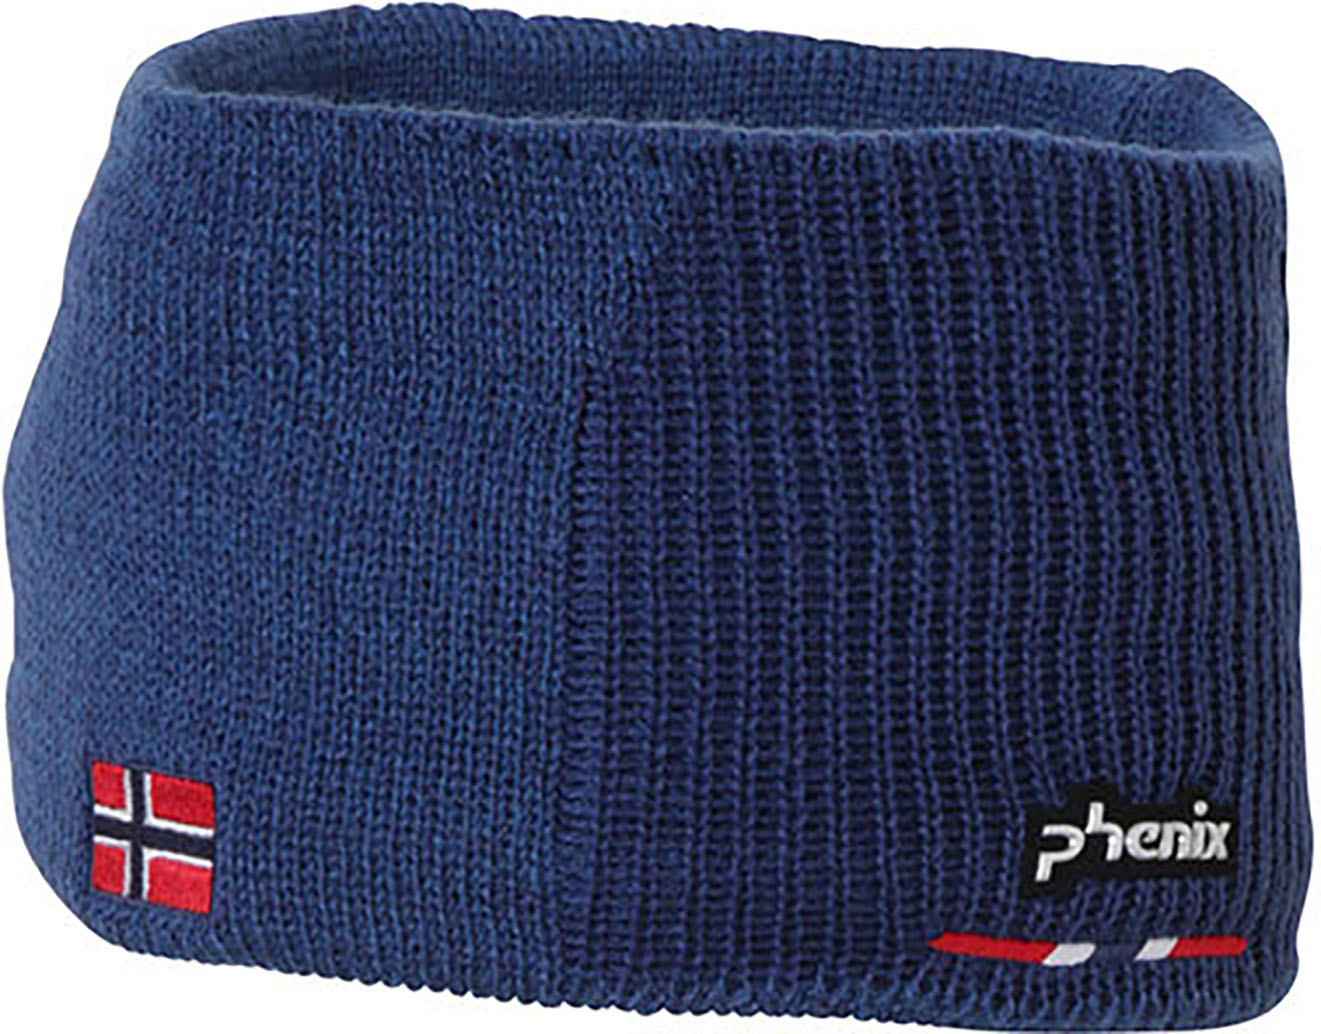 Norway Alpine Team Head Band (Dark blue)